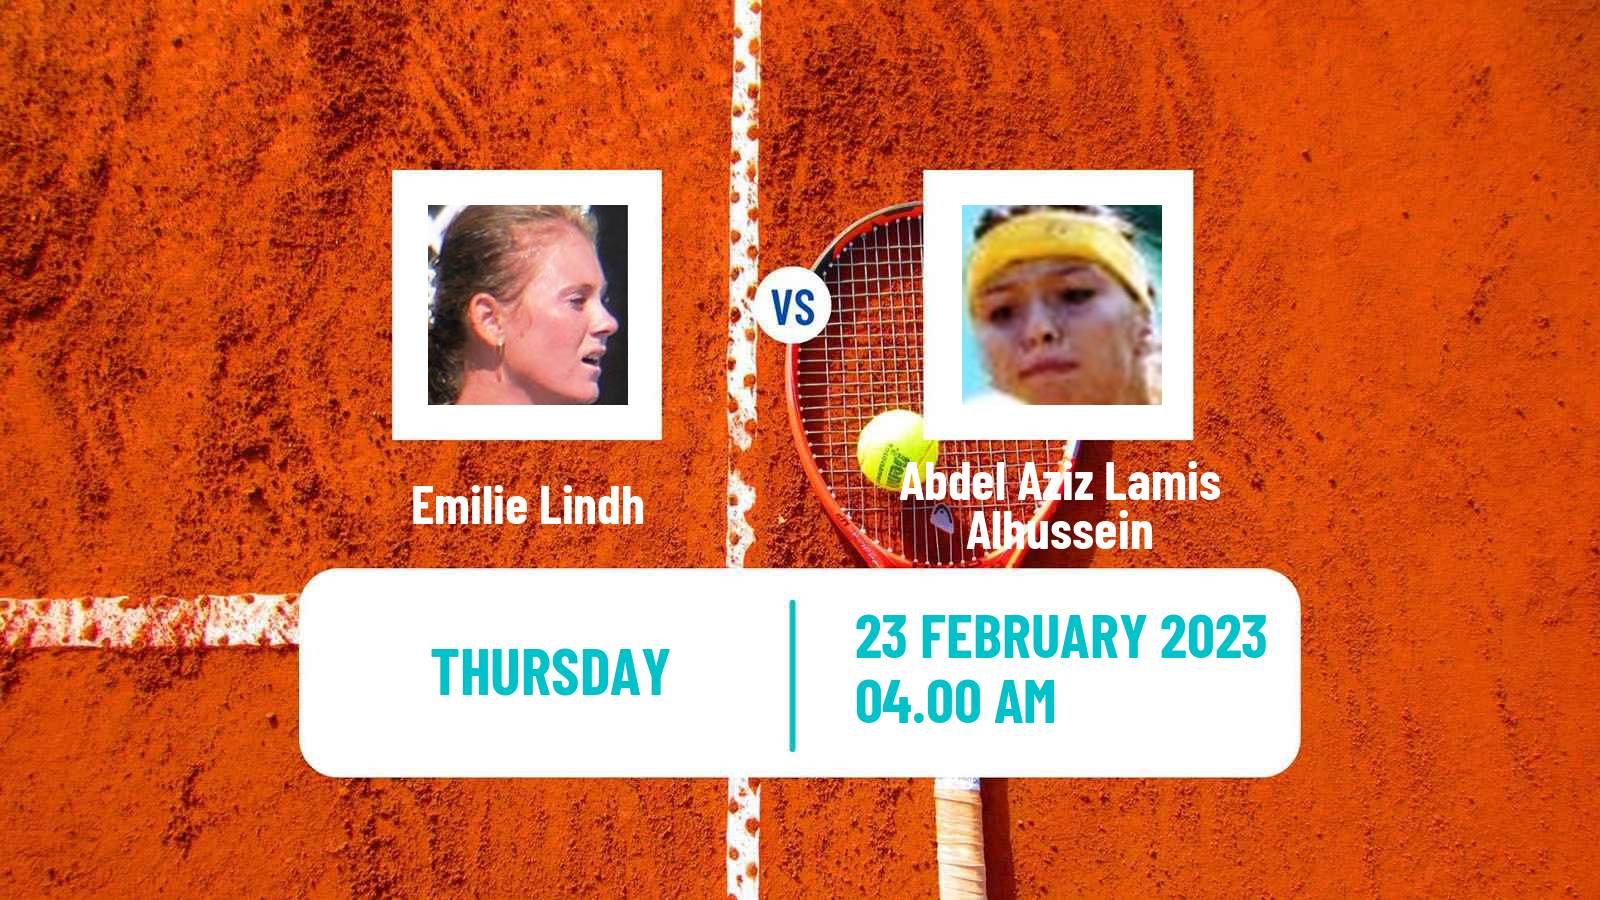 Tennis ITF Tournaments Emilie Lindh - Abdel Aziz Lamis Alhussein